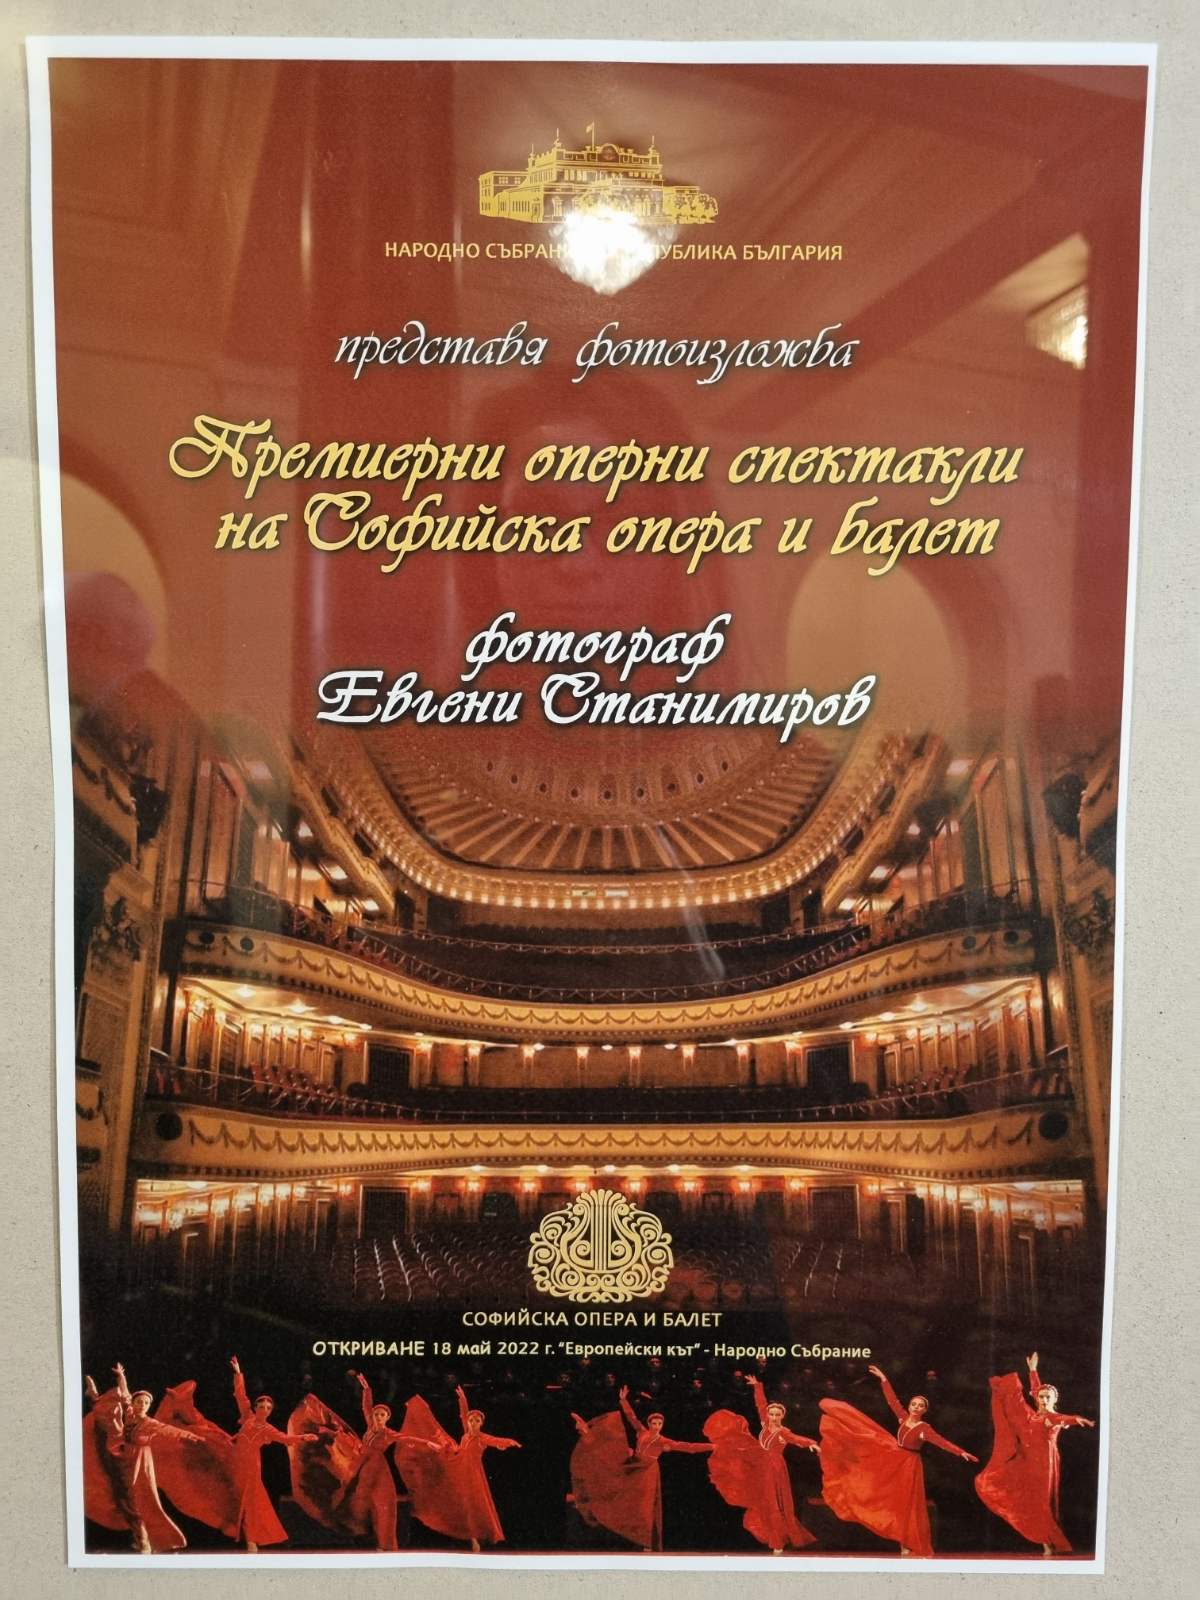 Софийската опера и балет с изложба в Народното събрание